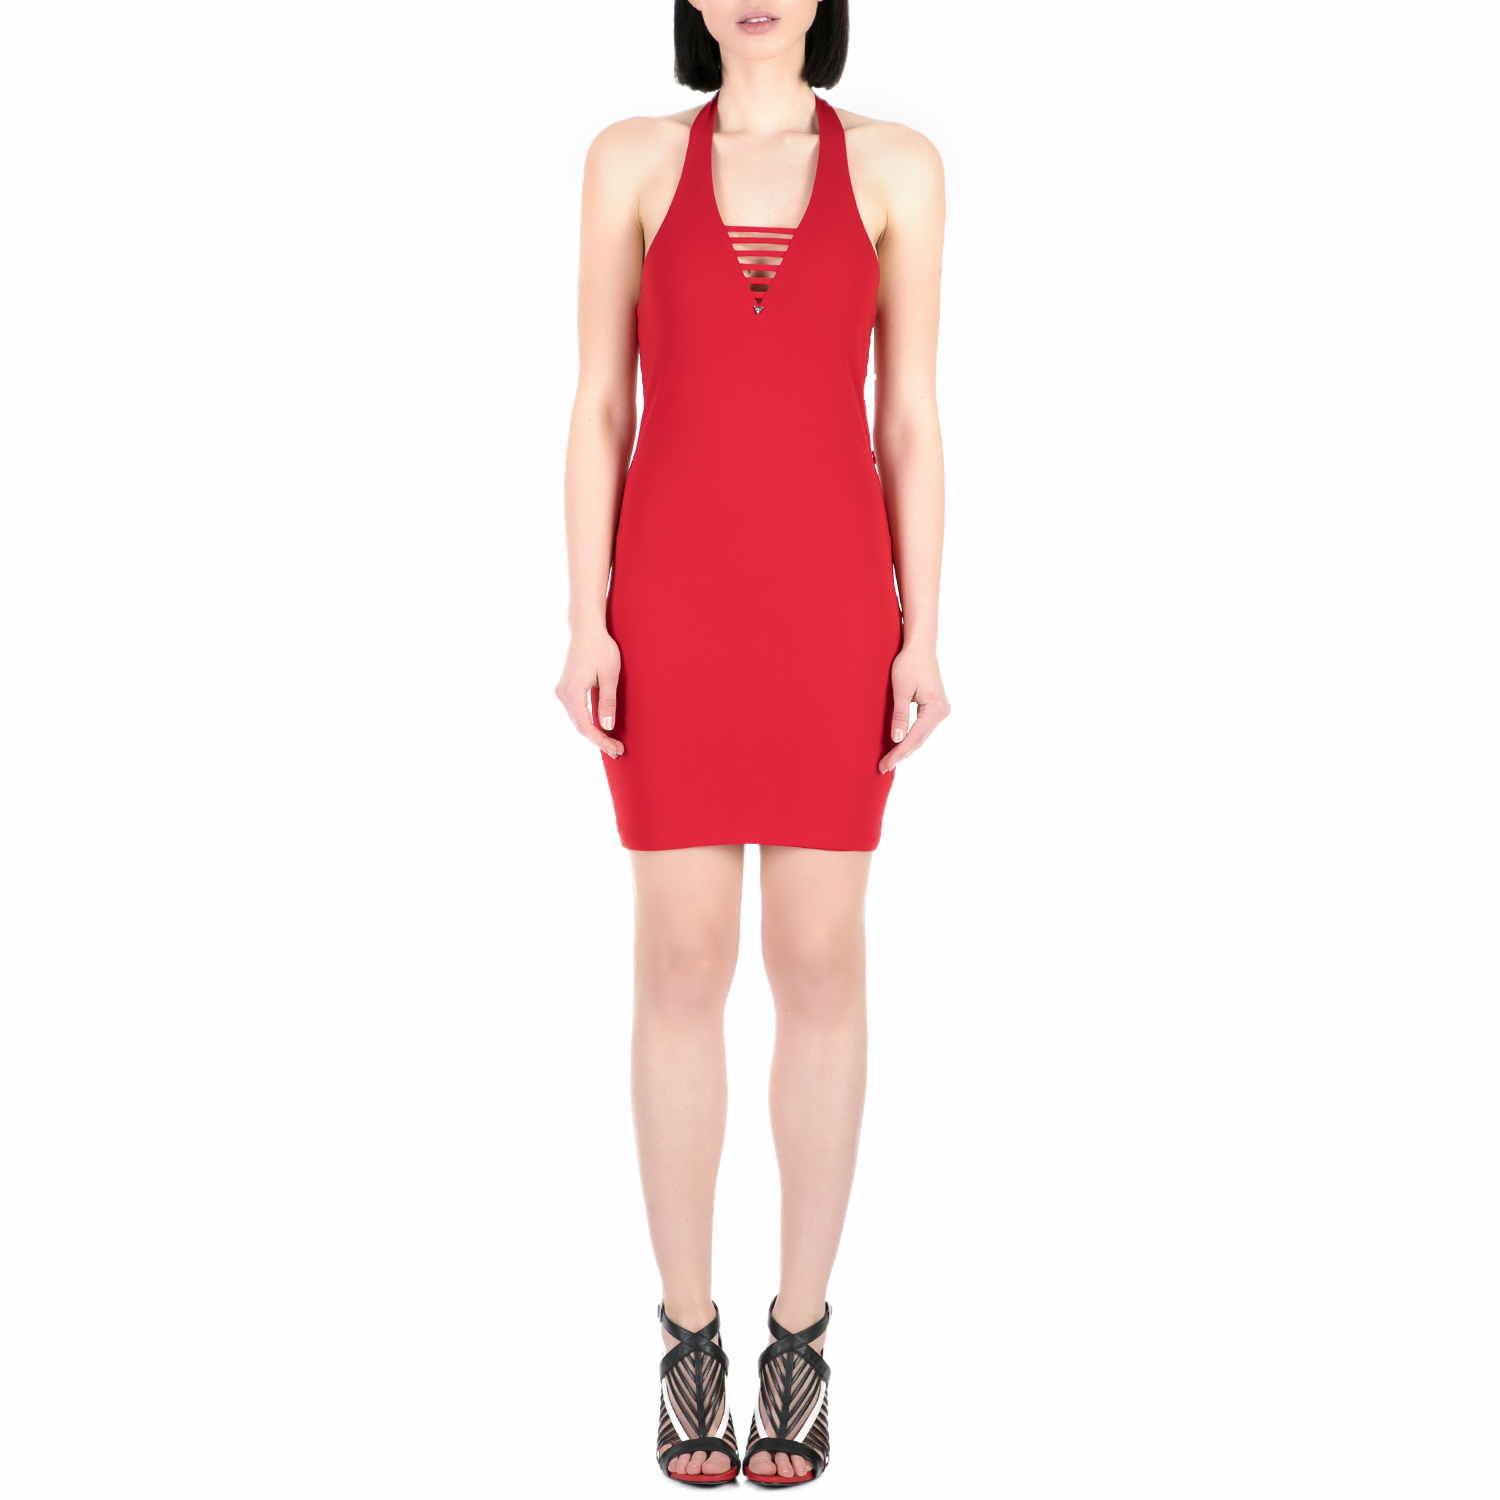 Γυναικεία/Ρούχα/Φορέματα/Μίνι GUESS - Γυναικείο μίνι φόρεμα Guess DALIA κόκκινο